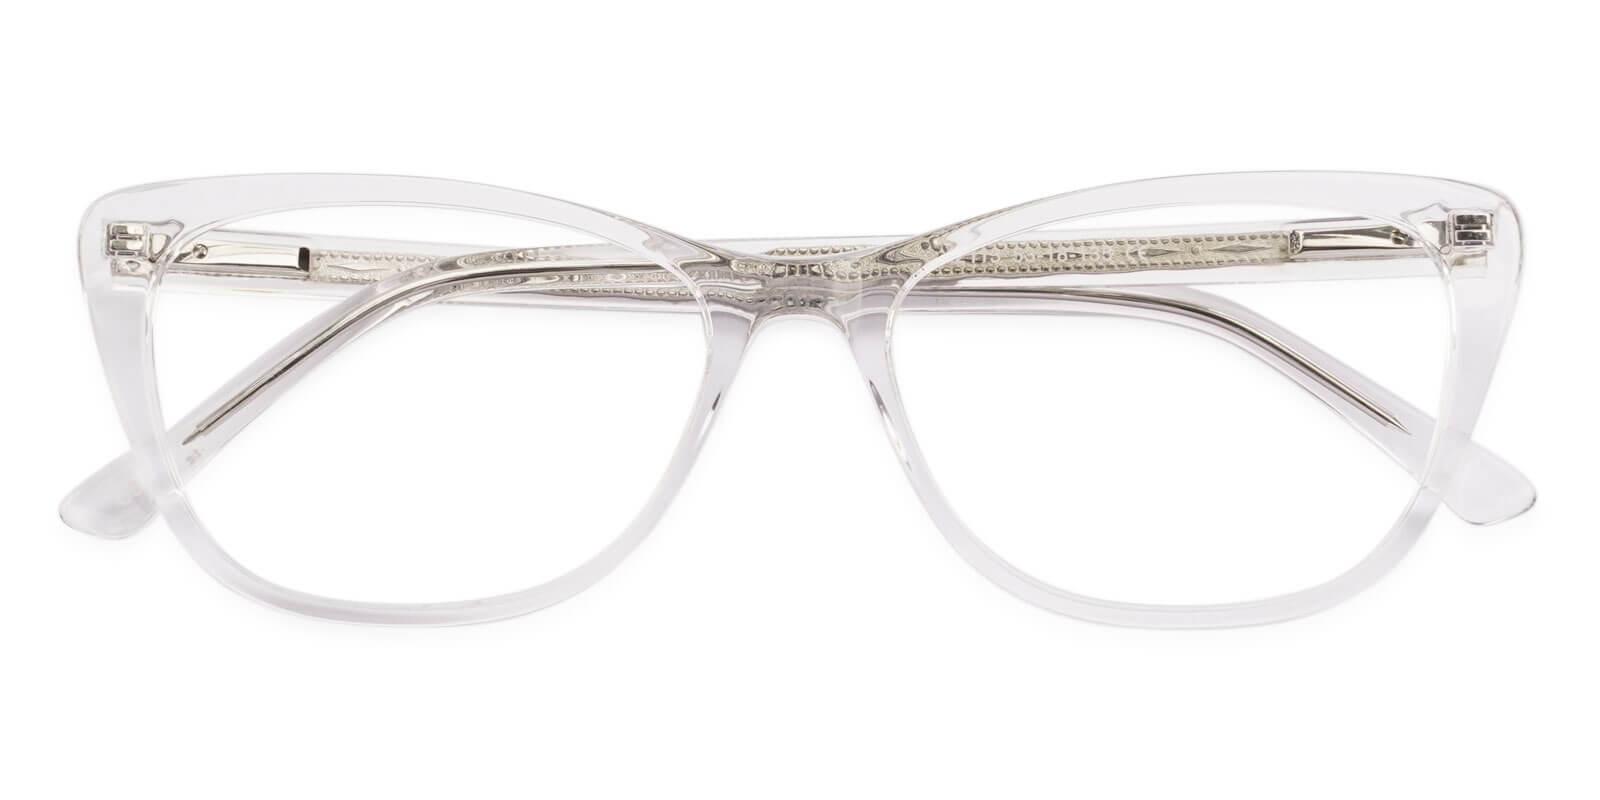 Yuke Translucent Acetate Eyeglasses , SpringHinges , UniversalBridgeFit Frames from ABBE Glasses